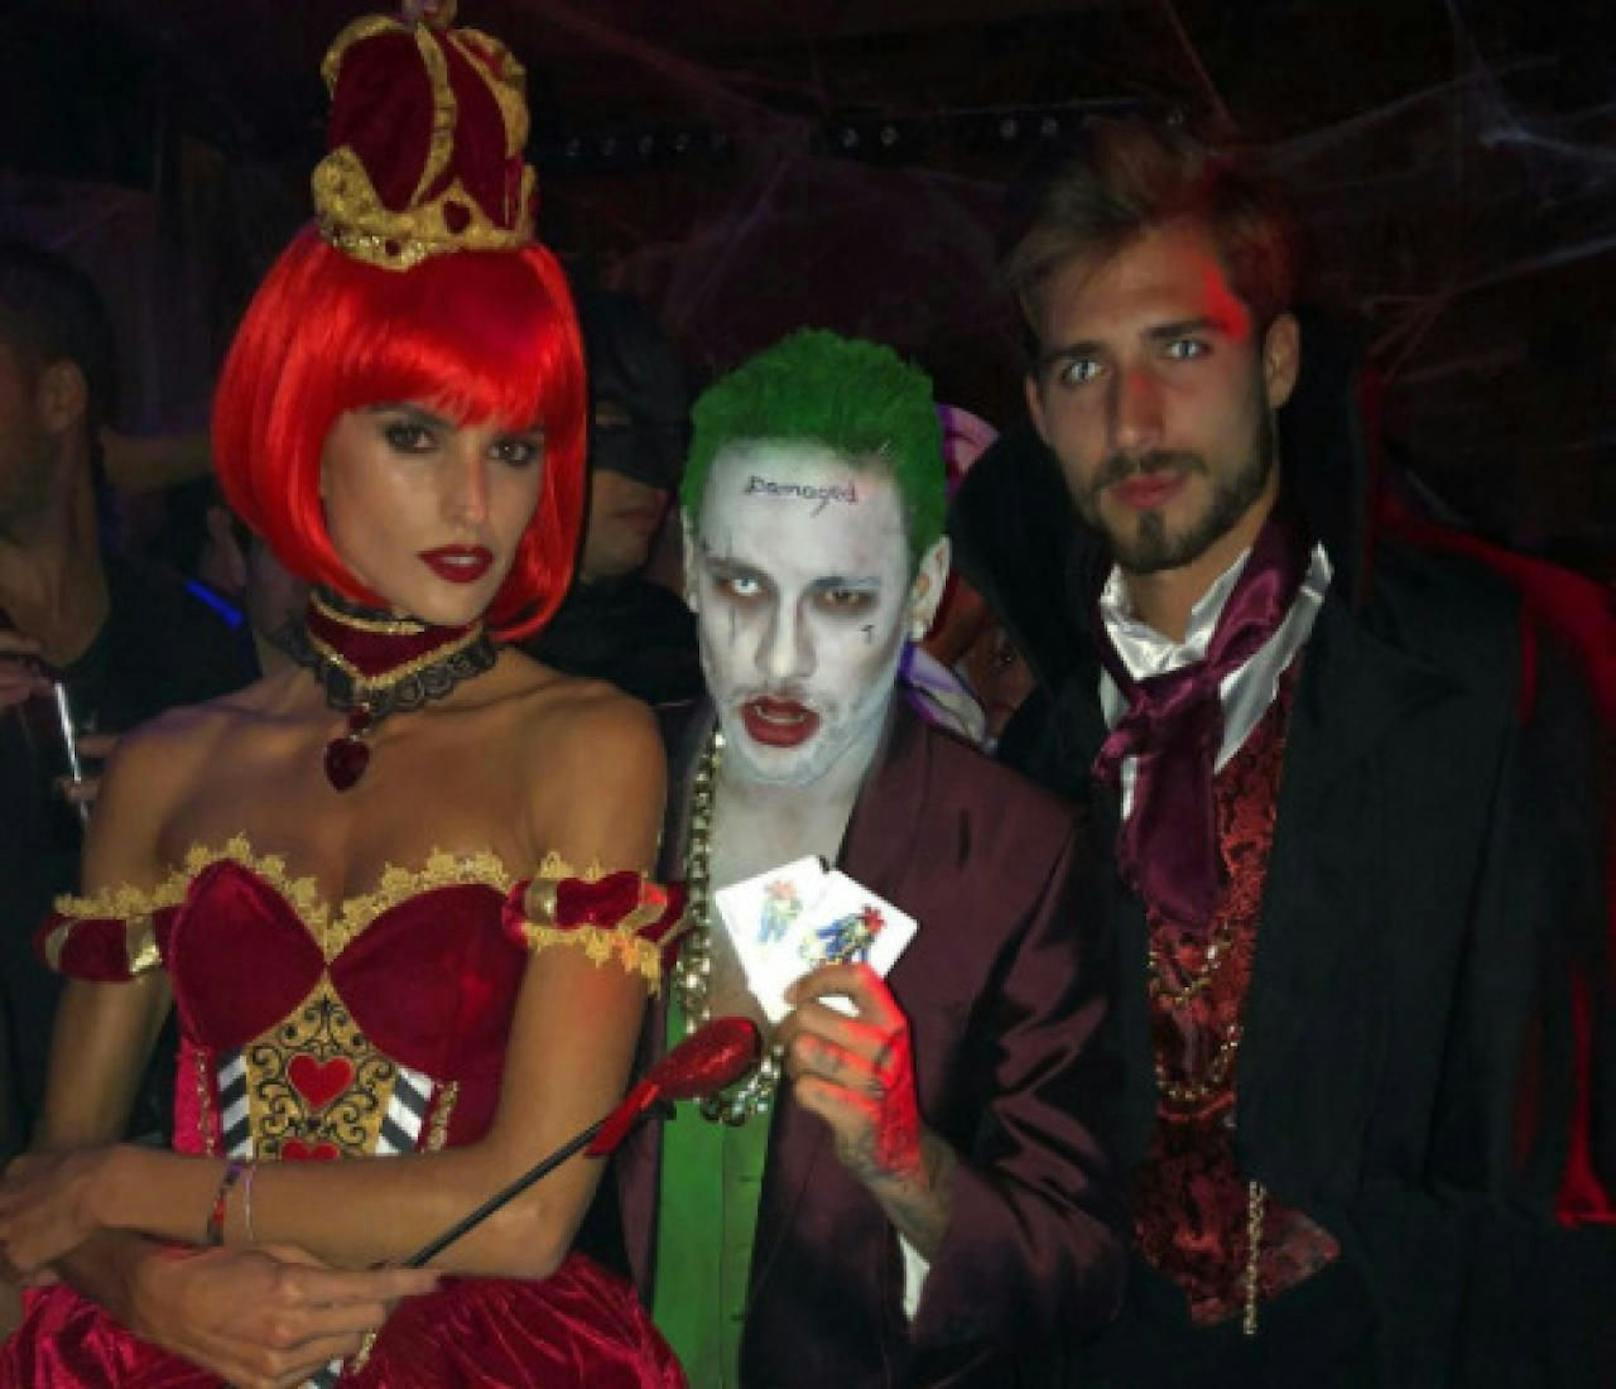 Paris-Star Neymar feiert Halloween als Joker